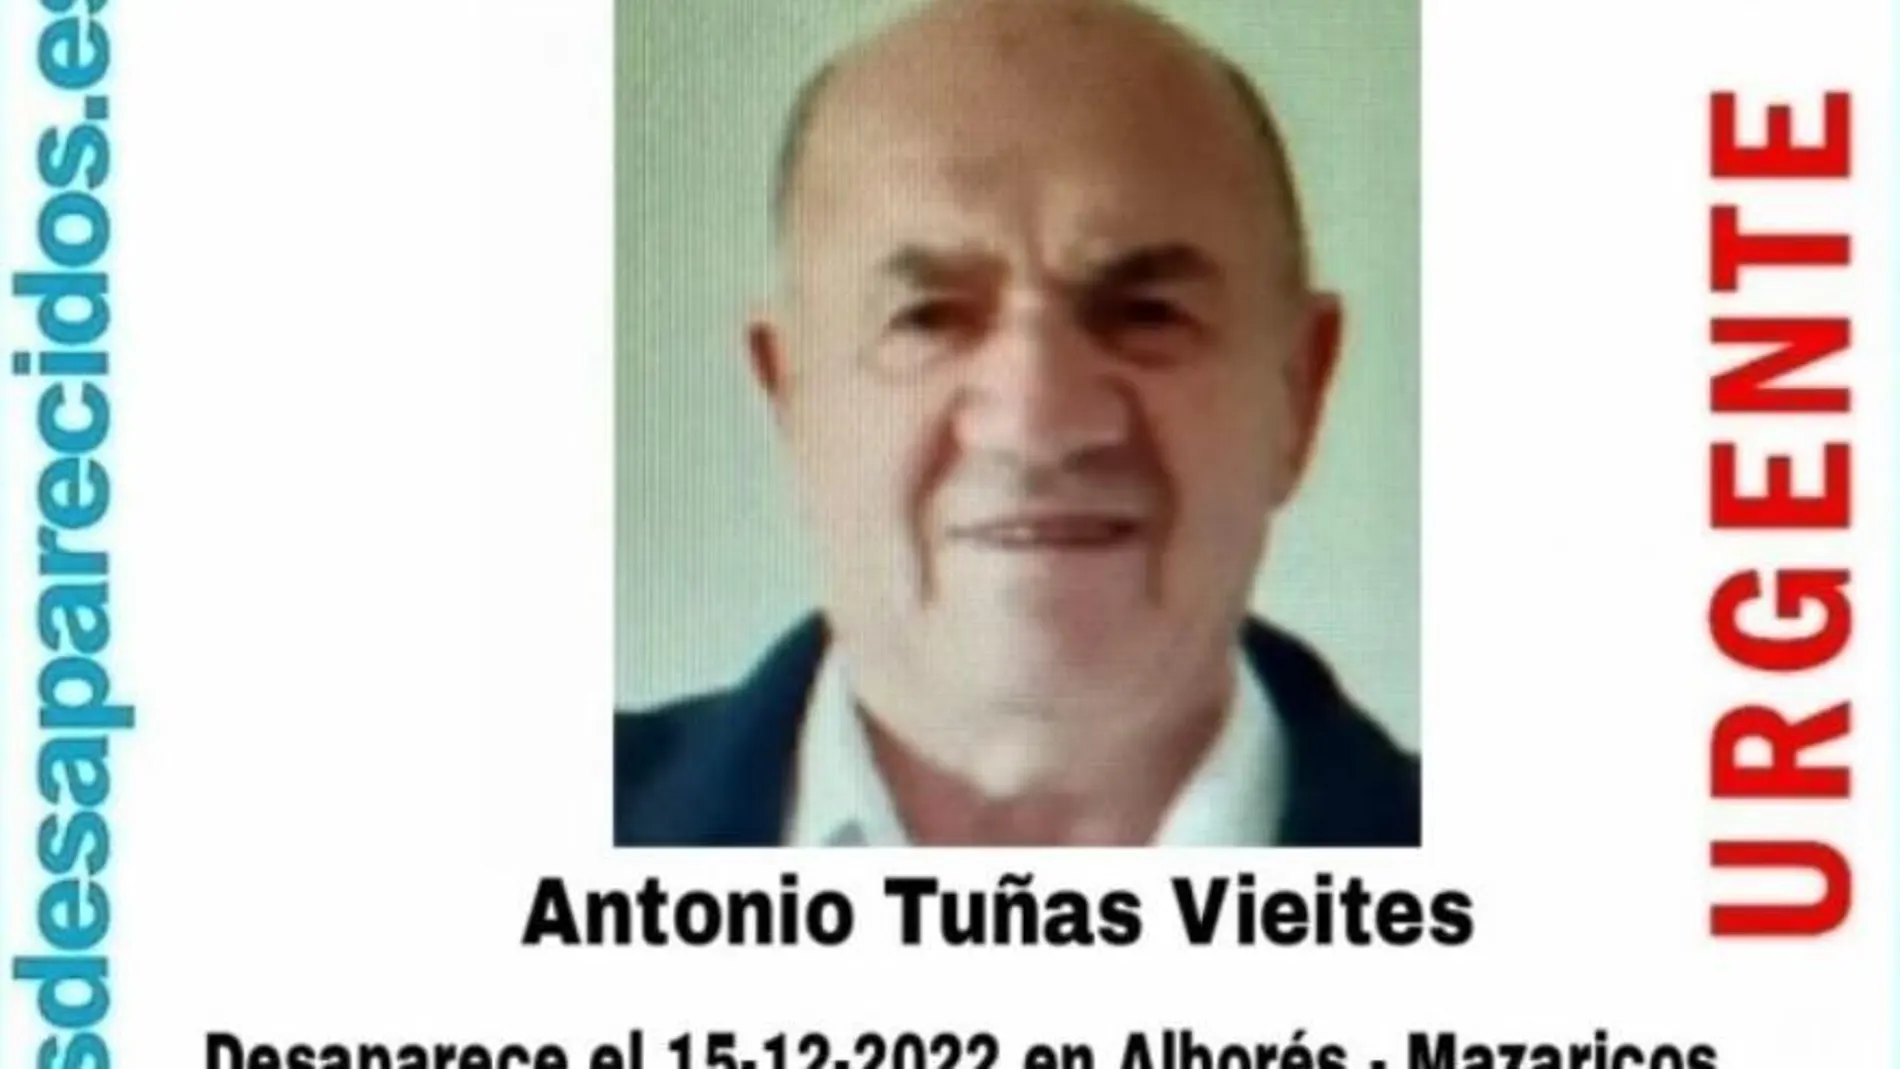 Cartel de búsqueda de Antonio Tuñas Vieites